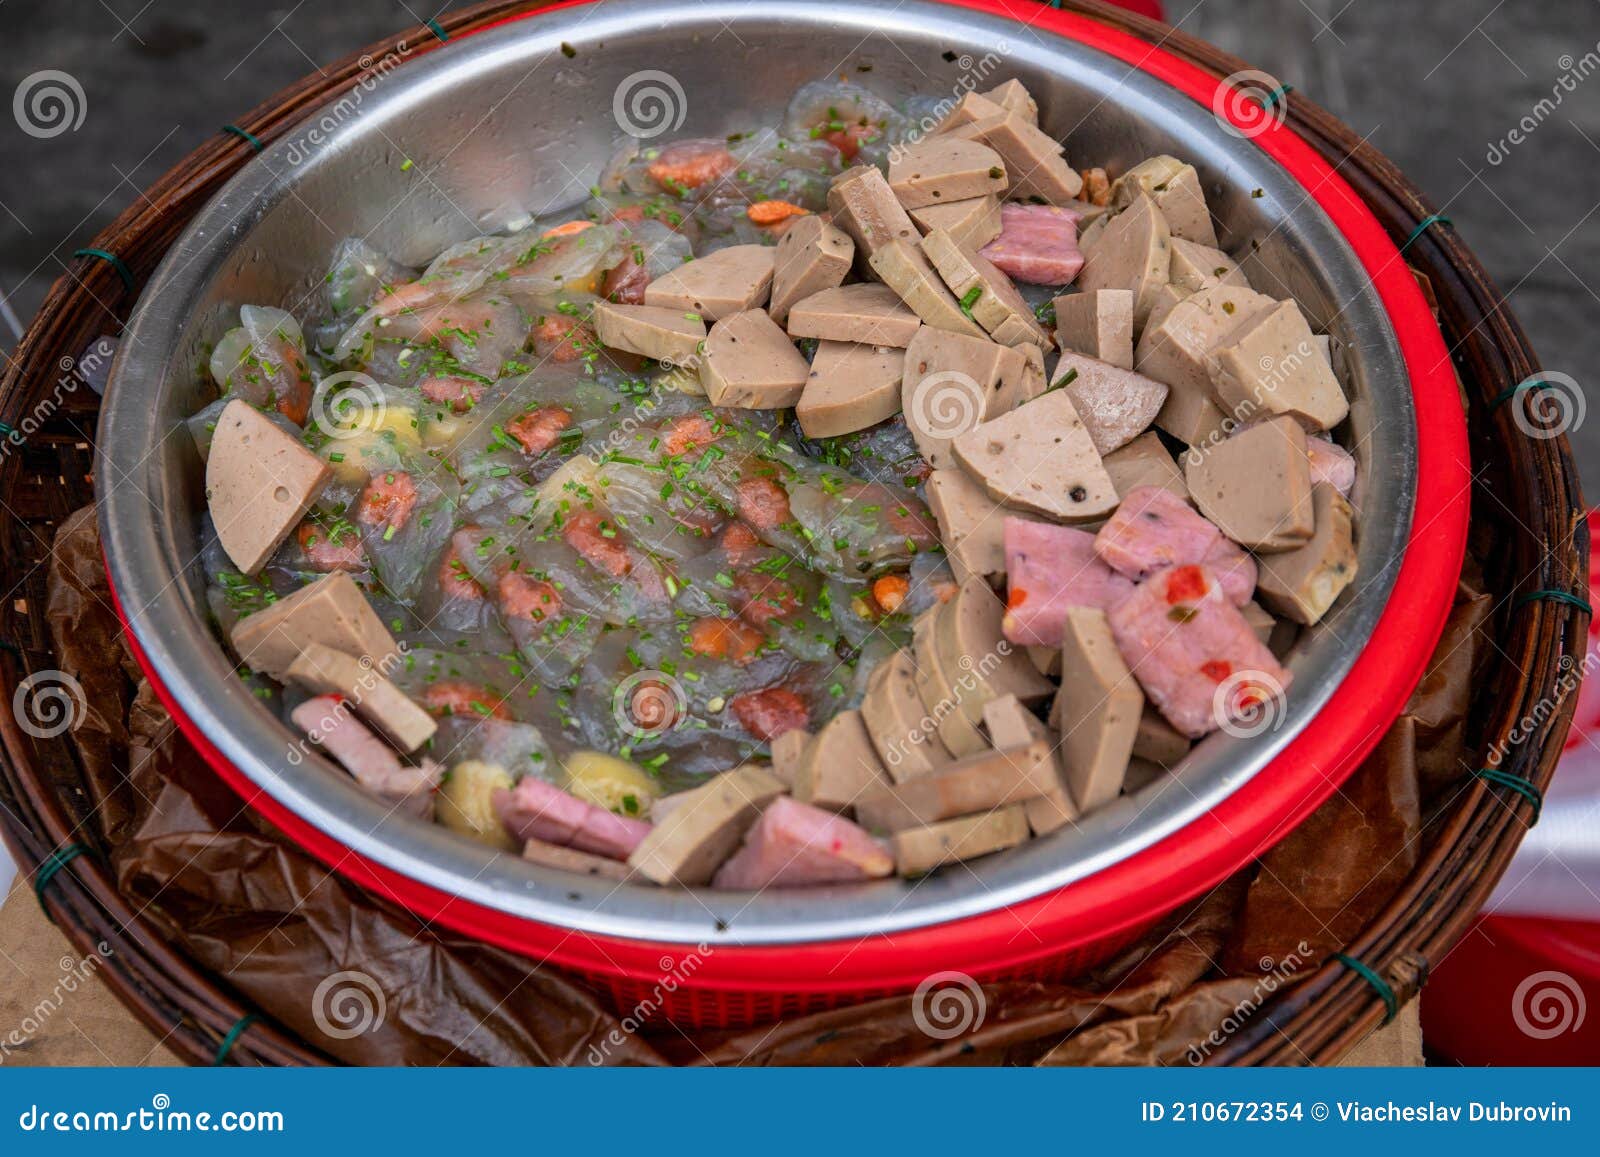 deepak khuntia share asian street meat vietnam photos